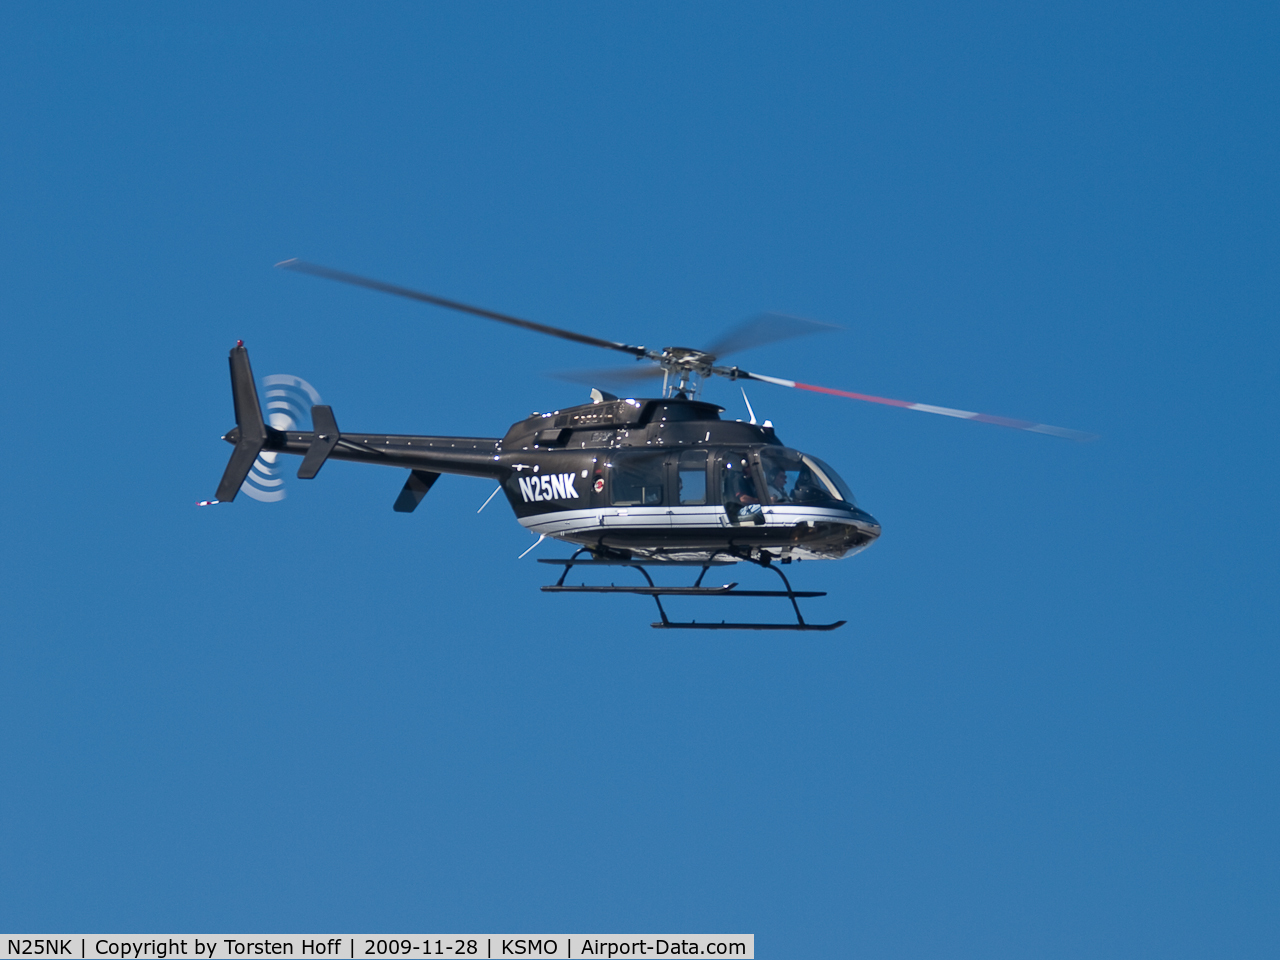 N25NK, 2008 Bell 407 C/N 53885, N25NK departing from RWY 03